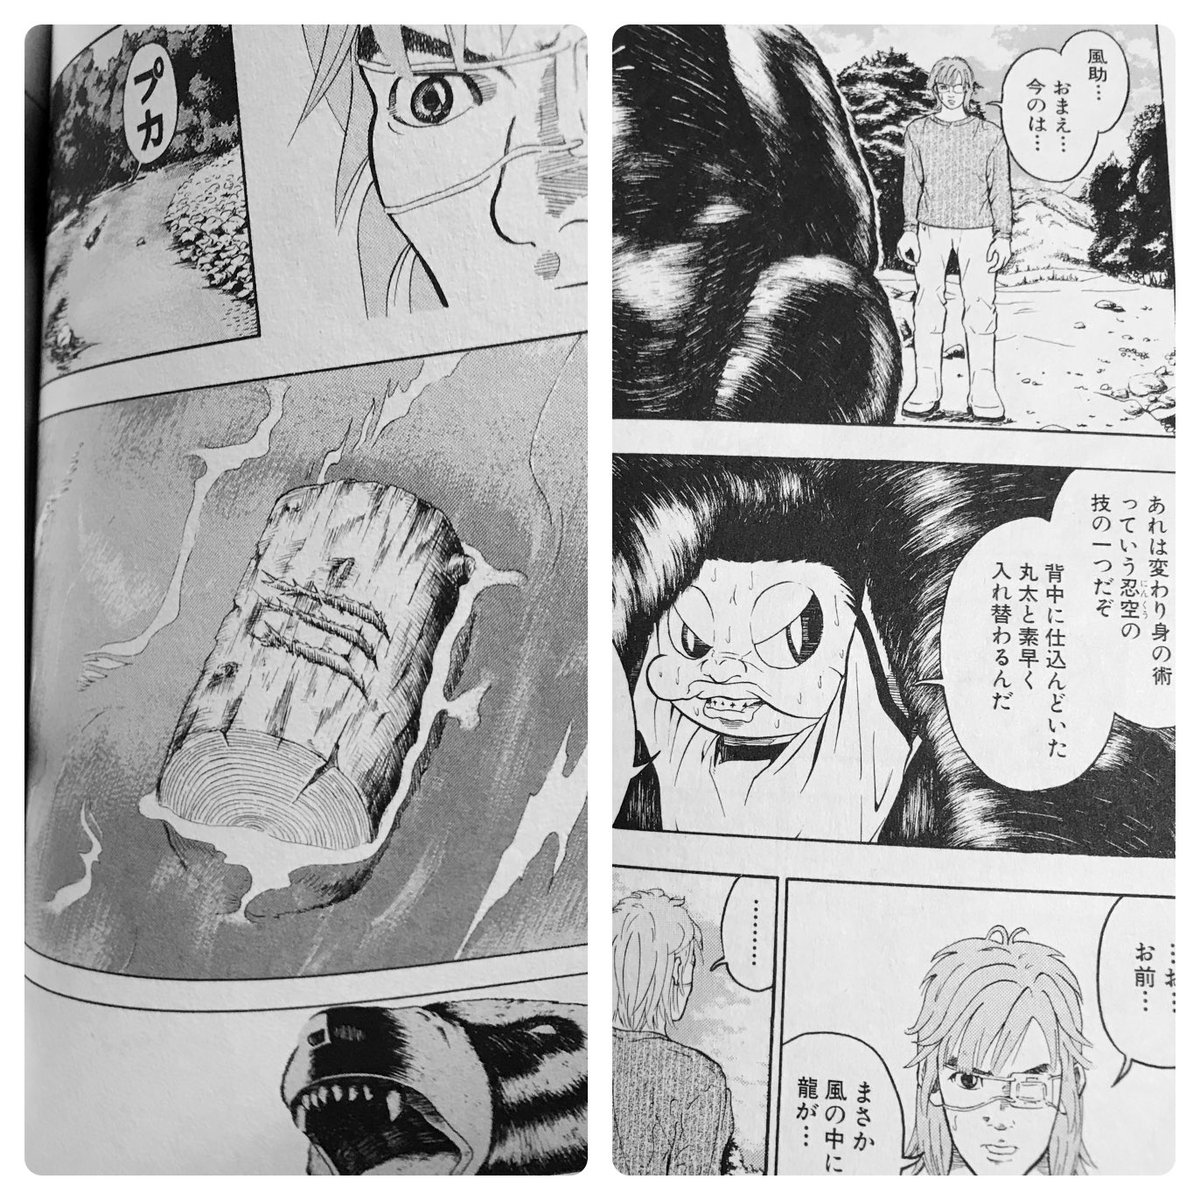 𝗰𝗵𝗶𝘆𝘂 Naruto Boruto 忍空 数年ぶりに読んでる 忍術etc 空 圧拳っての螺旋丸にﾁｮｯﾄ似てるんだなコレ 岸本先生は忍空に影響を受け Naruto を描いたとか 違ってたらｺﾞﾒﾝﾅｻｲ 忍空読んでから Narutoにハマった やぱ忍空面白い T Co